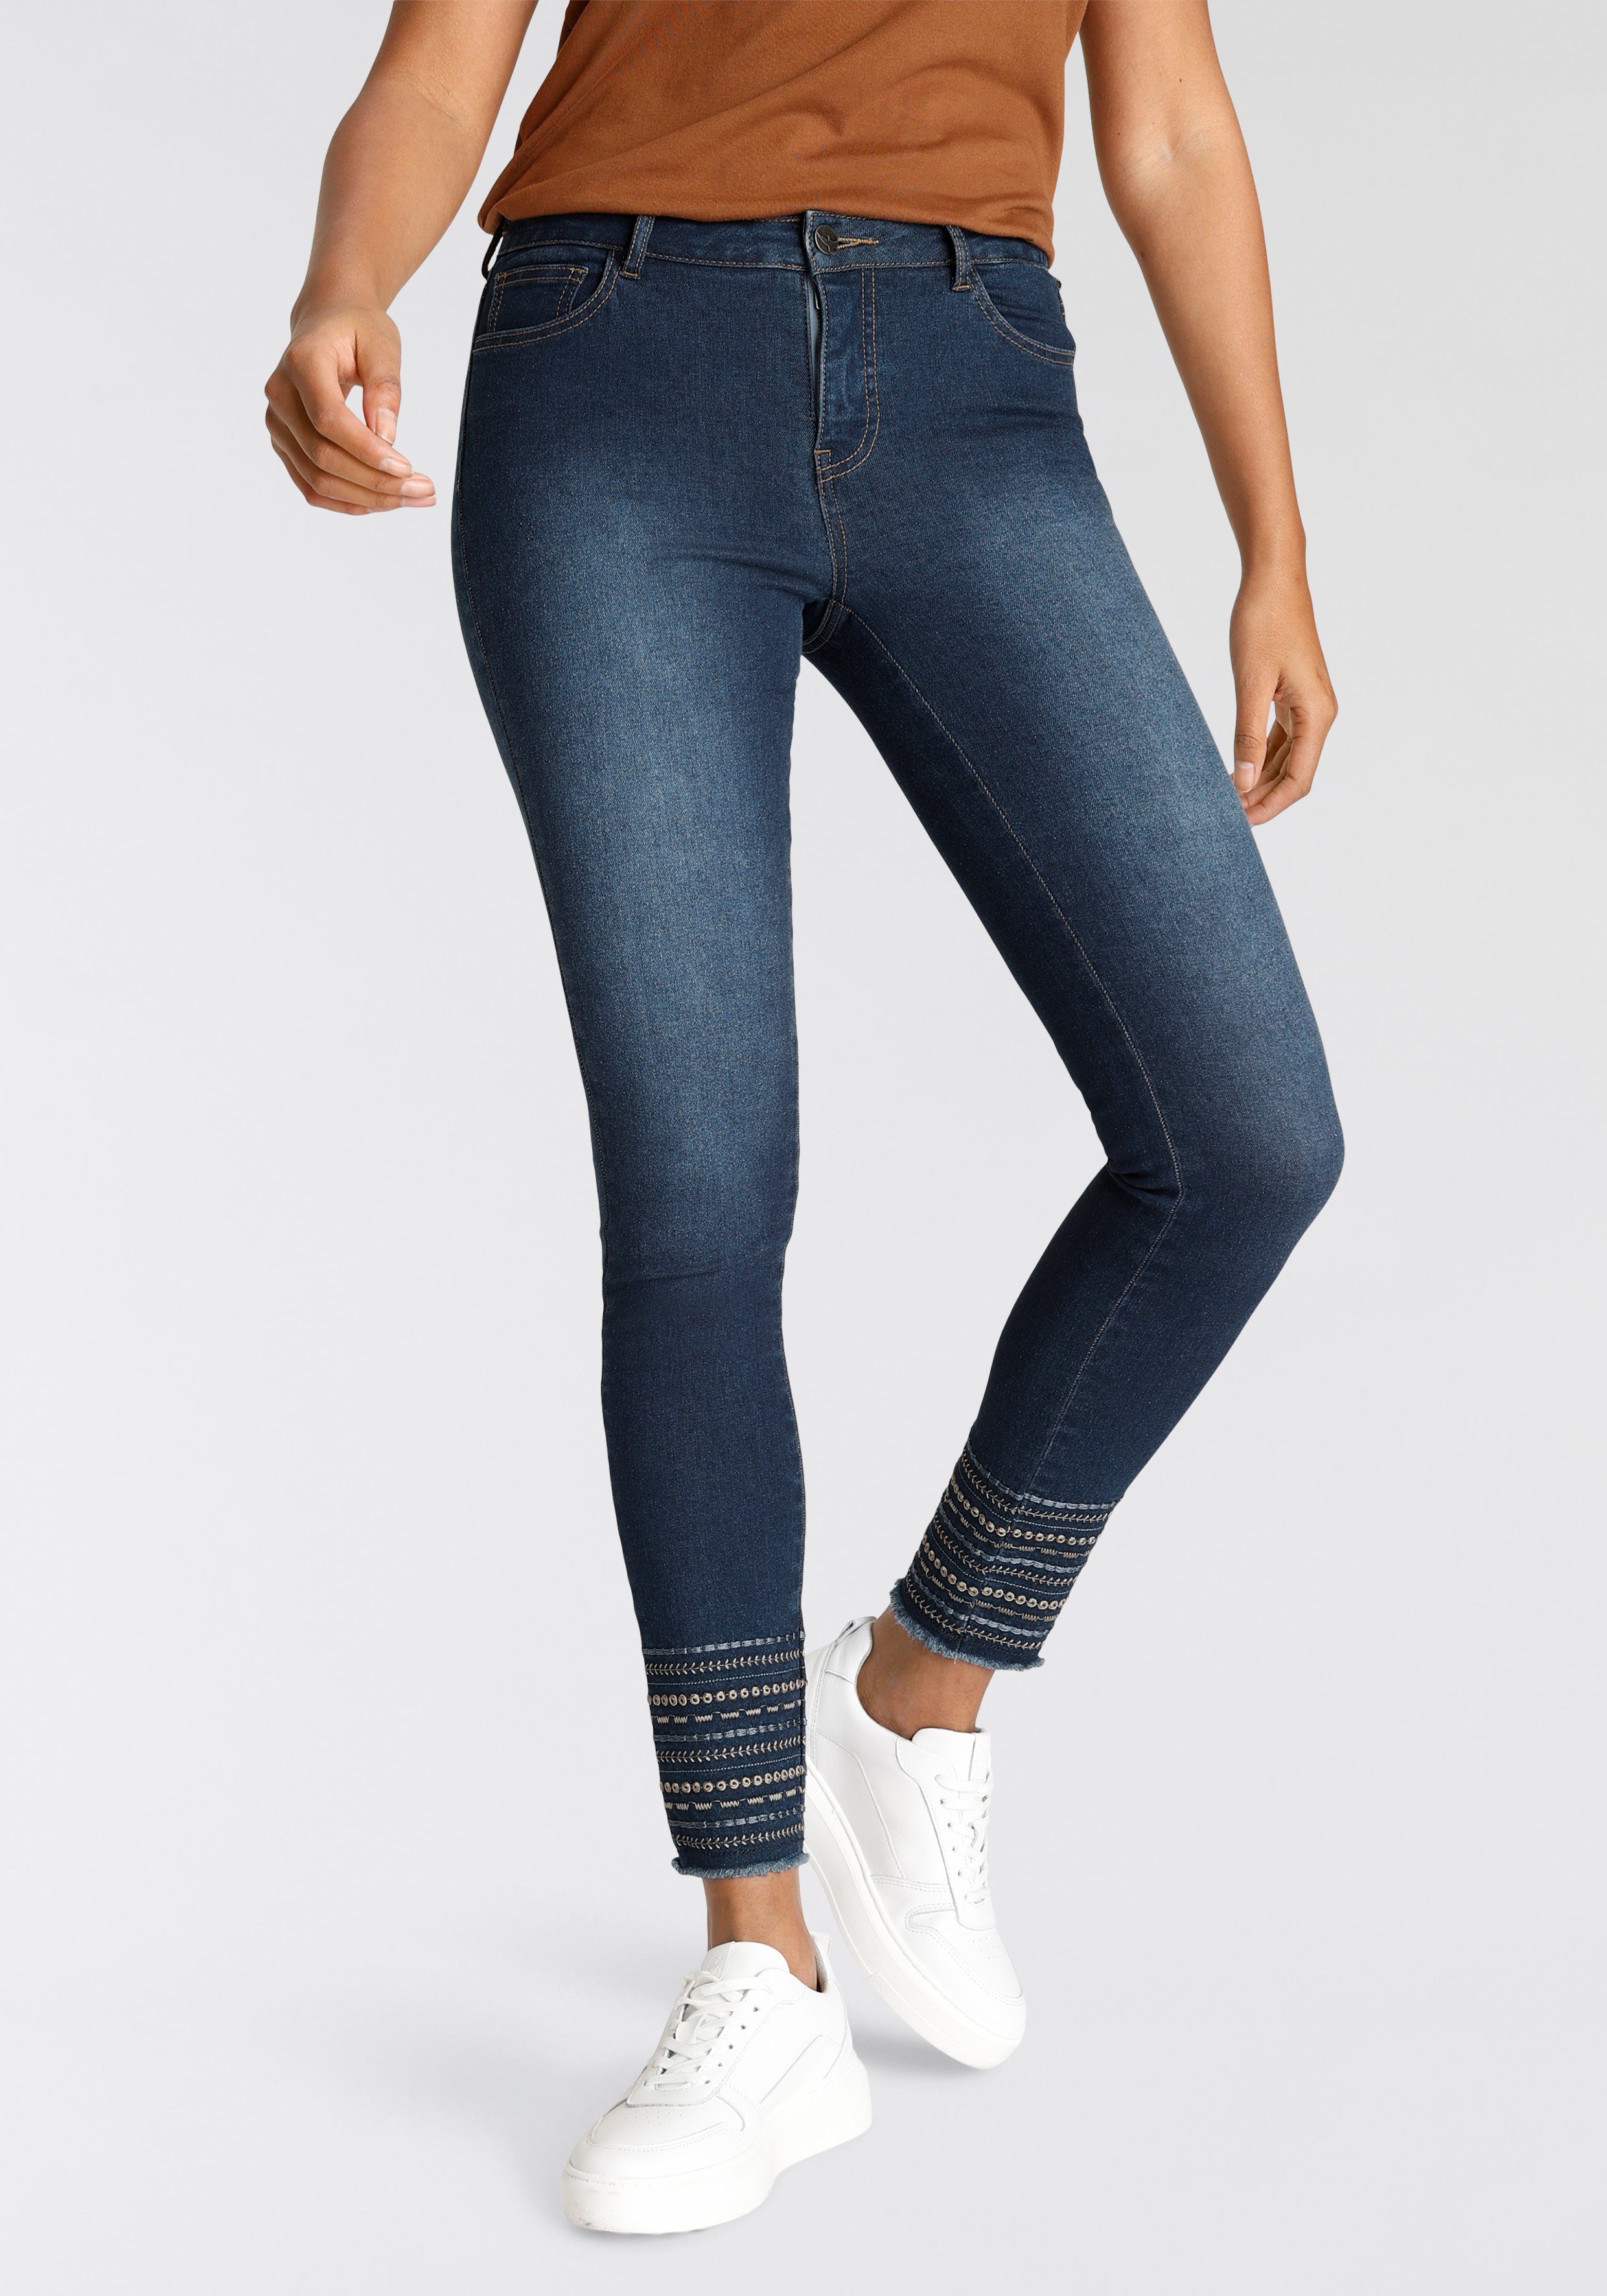 Arizona Skinny-fit-Jeans Mit Waist, Saum auffälliger Stickerei am toller High